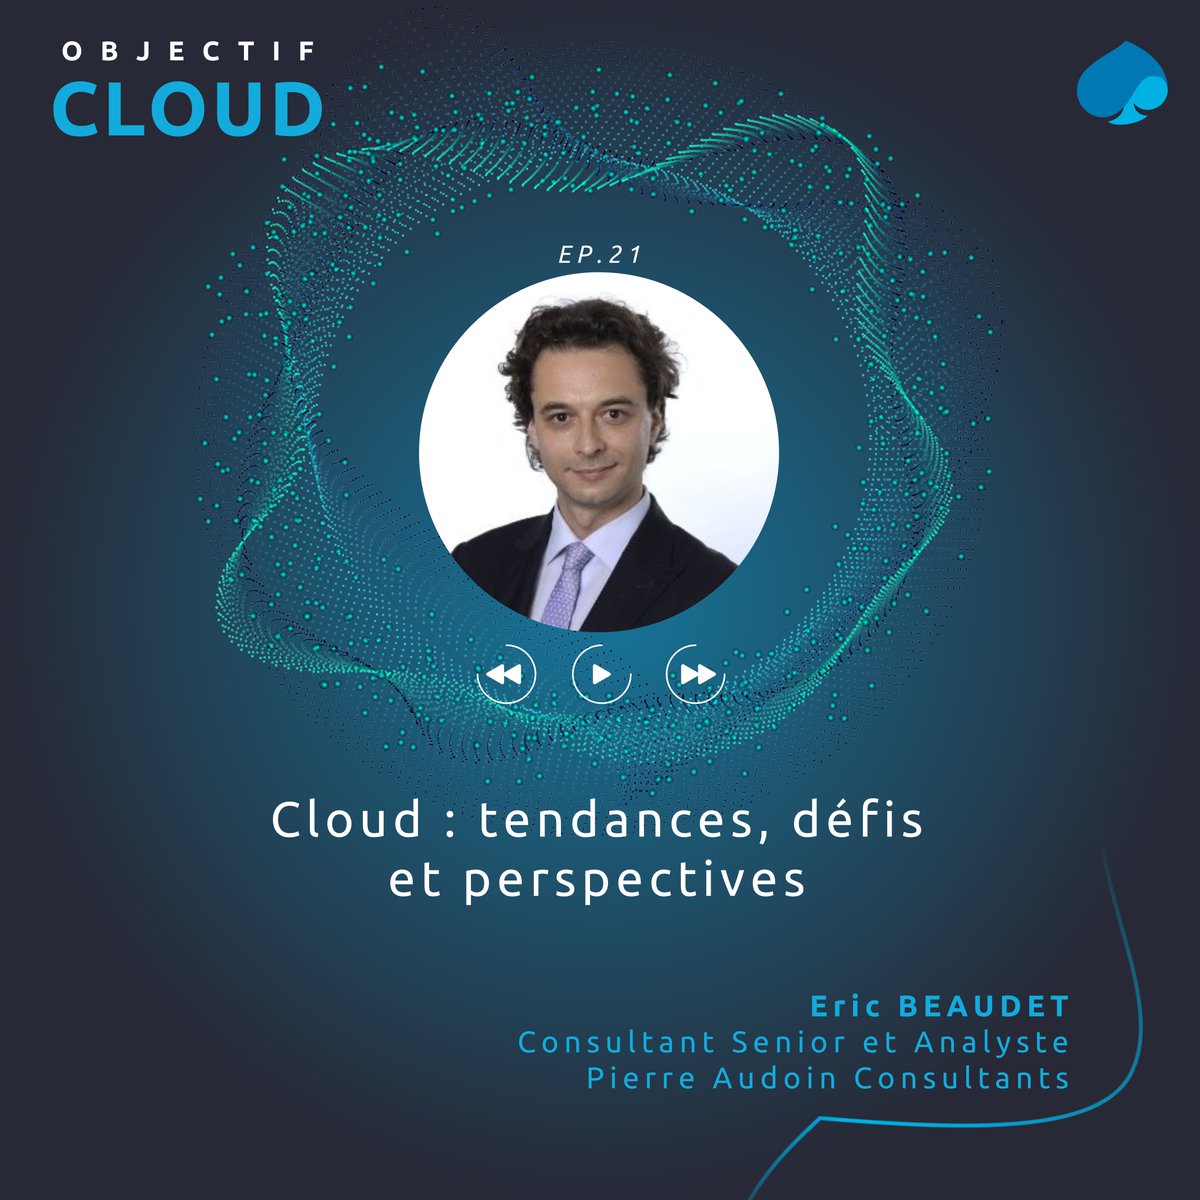 Quelles sont les perspectives du #Cloud en 2024 ? Éric Baudet, Senior Analyste chez @PAC_Analyst_FR, partage ses observations sur les tendances qui devraient redéfinir le #Cloud en 2024 🎙️ #ObjectifCloud : bit.ly/3Ttb6jl